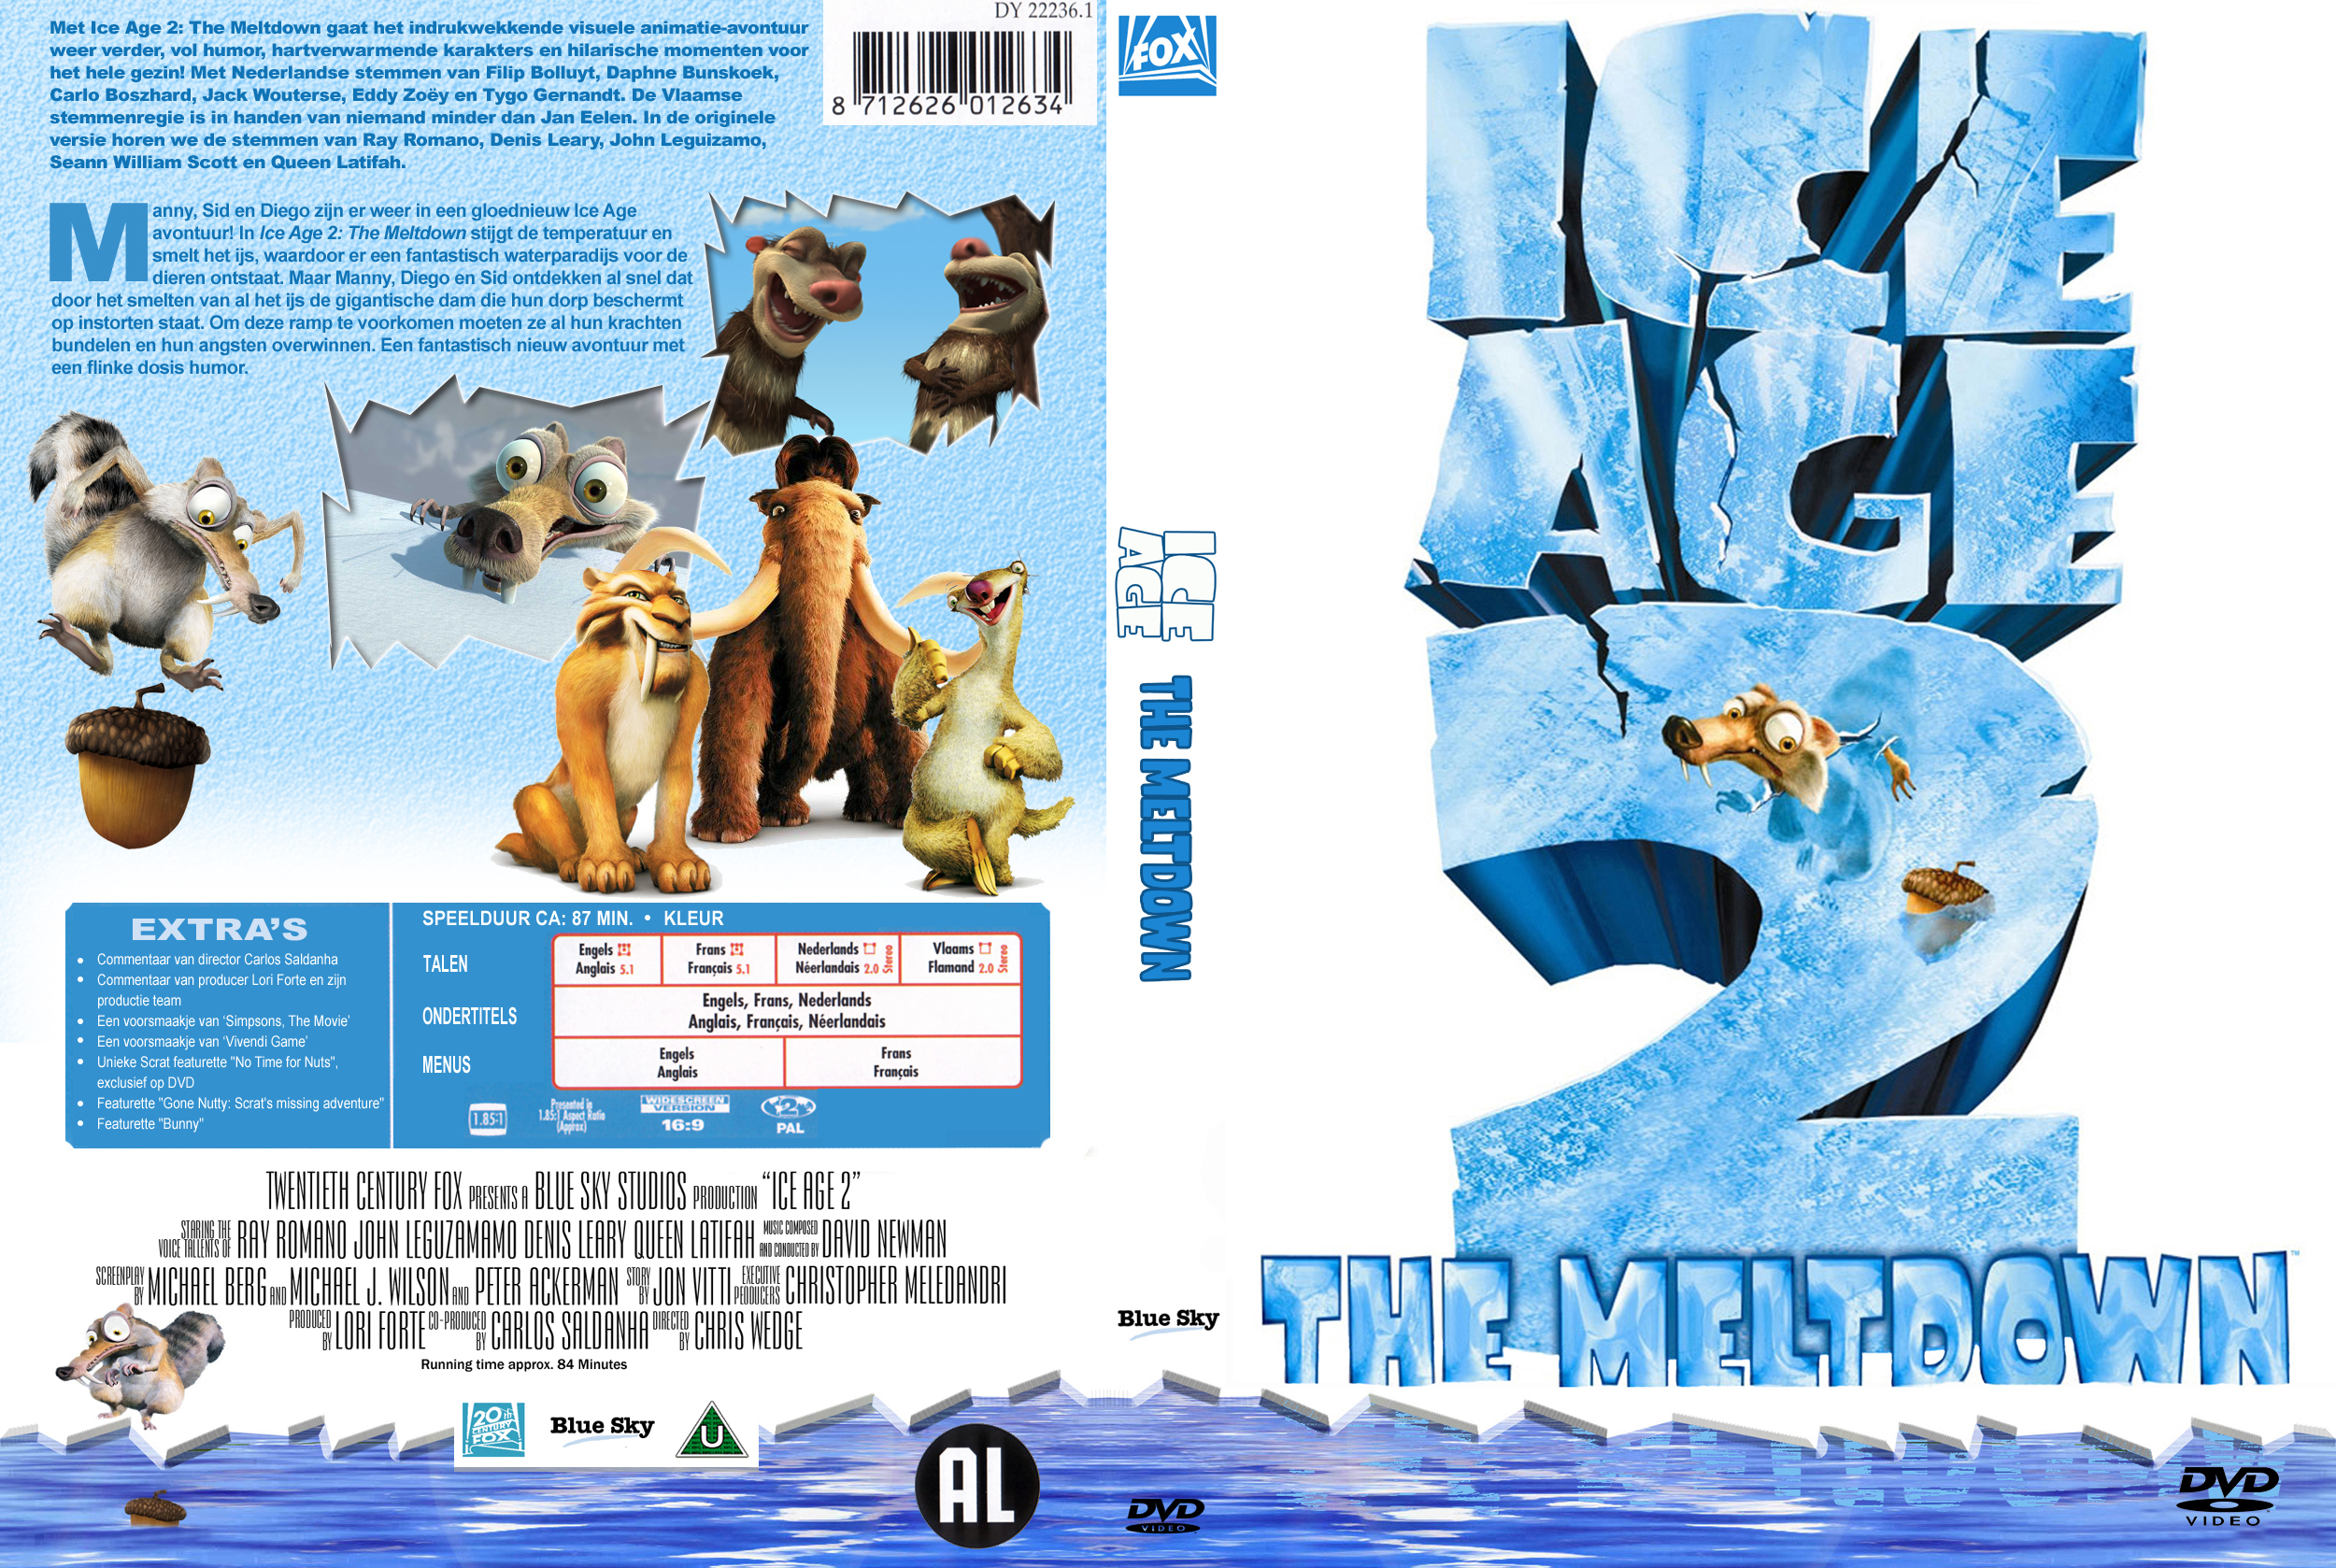 Журнал айс. Ледниковый период 2 игра диск. Ice age: the Meltdown (2006). Ice age 2 the Meltdown DVD. Ice age 2 the Meltdown DVD 2006.